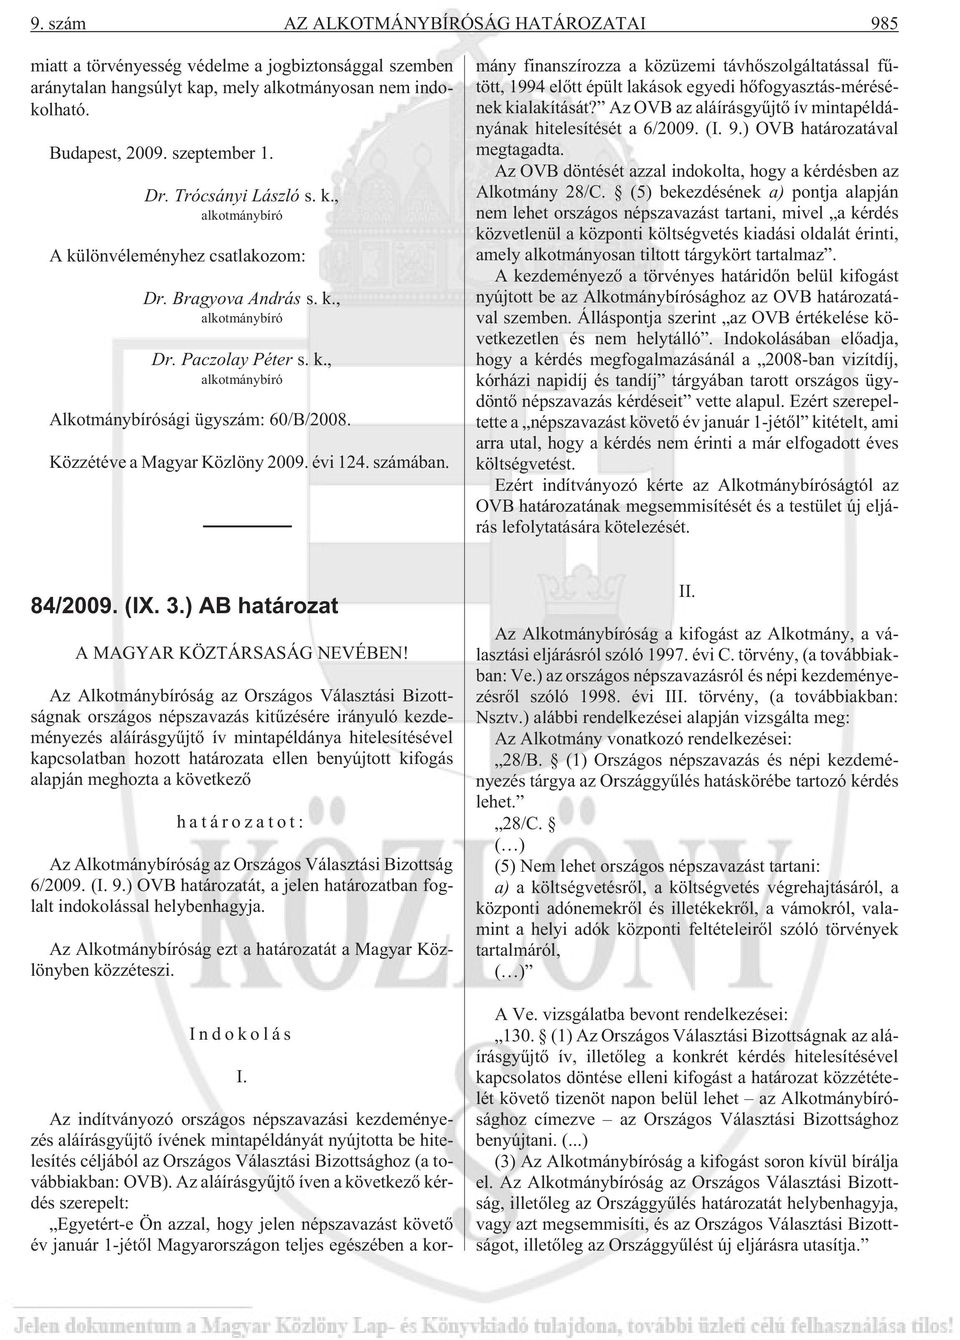 Az indítványozó országos népszavazási kezdeményezés aláírásgyûjtõ ívének mintapéldányát nyújtotta be hitelesítés céljából az Országos Választási Bizottsághoz (a továbbiakban: OVB).